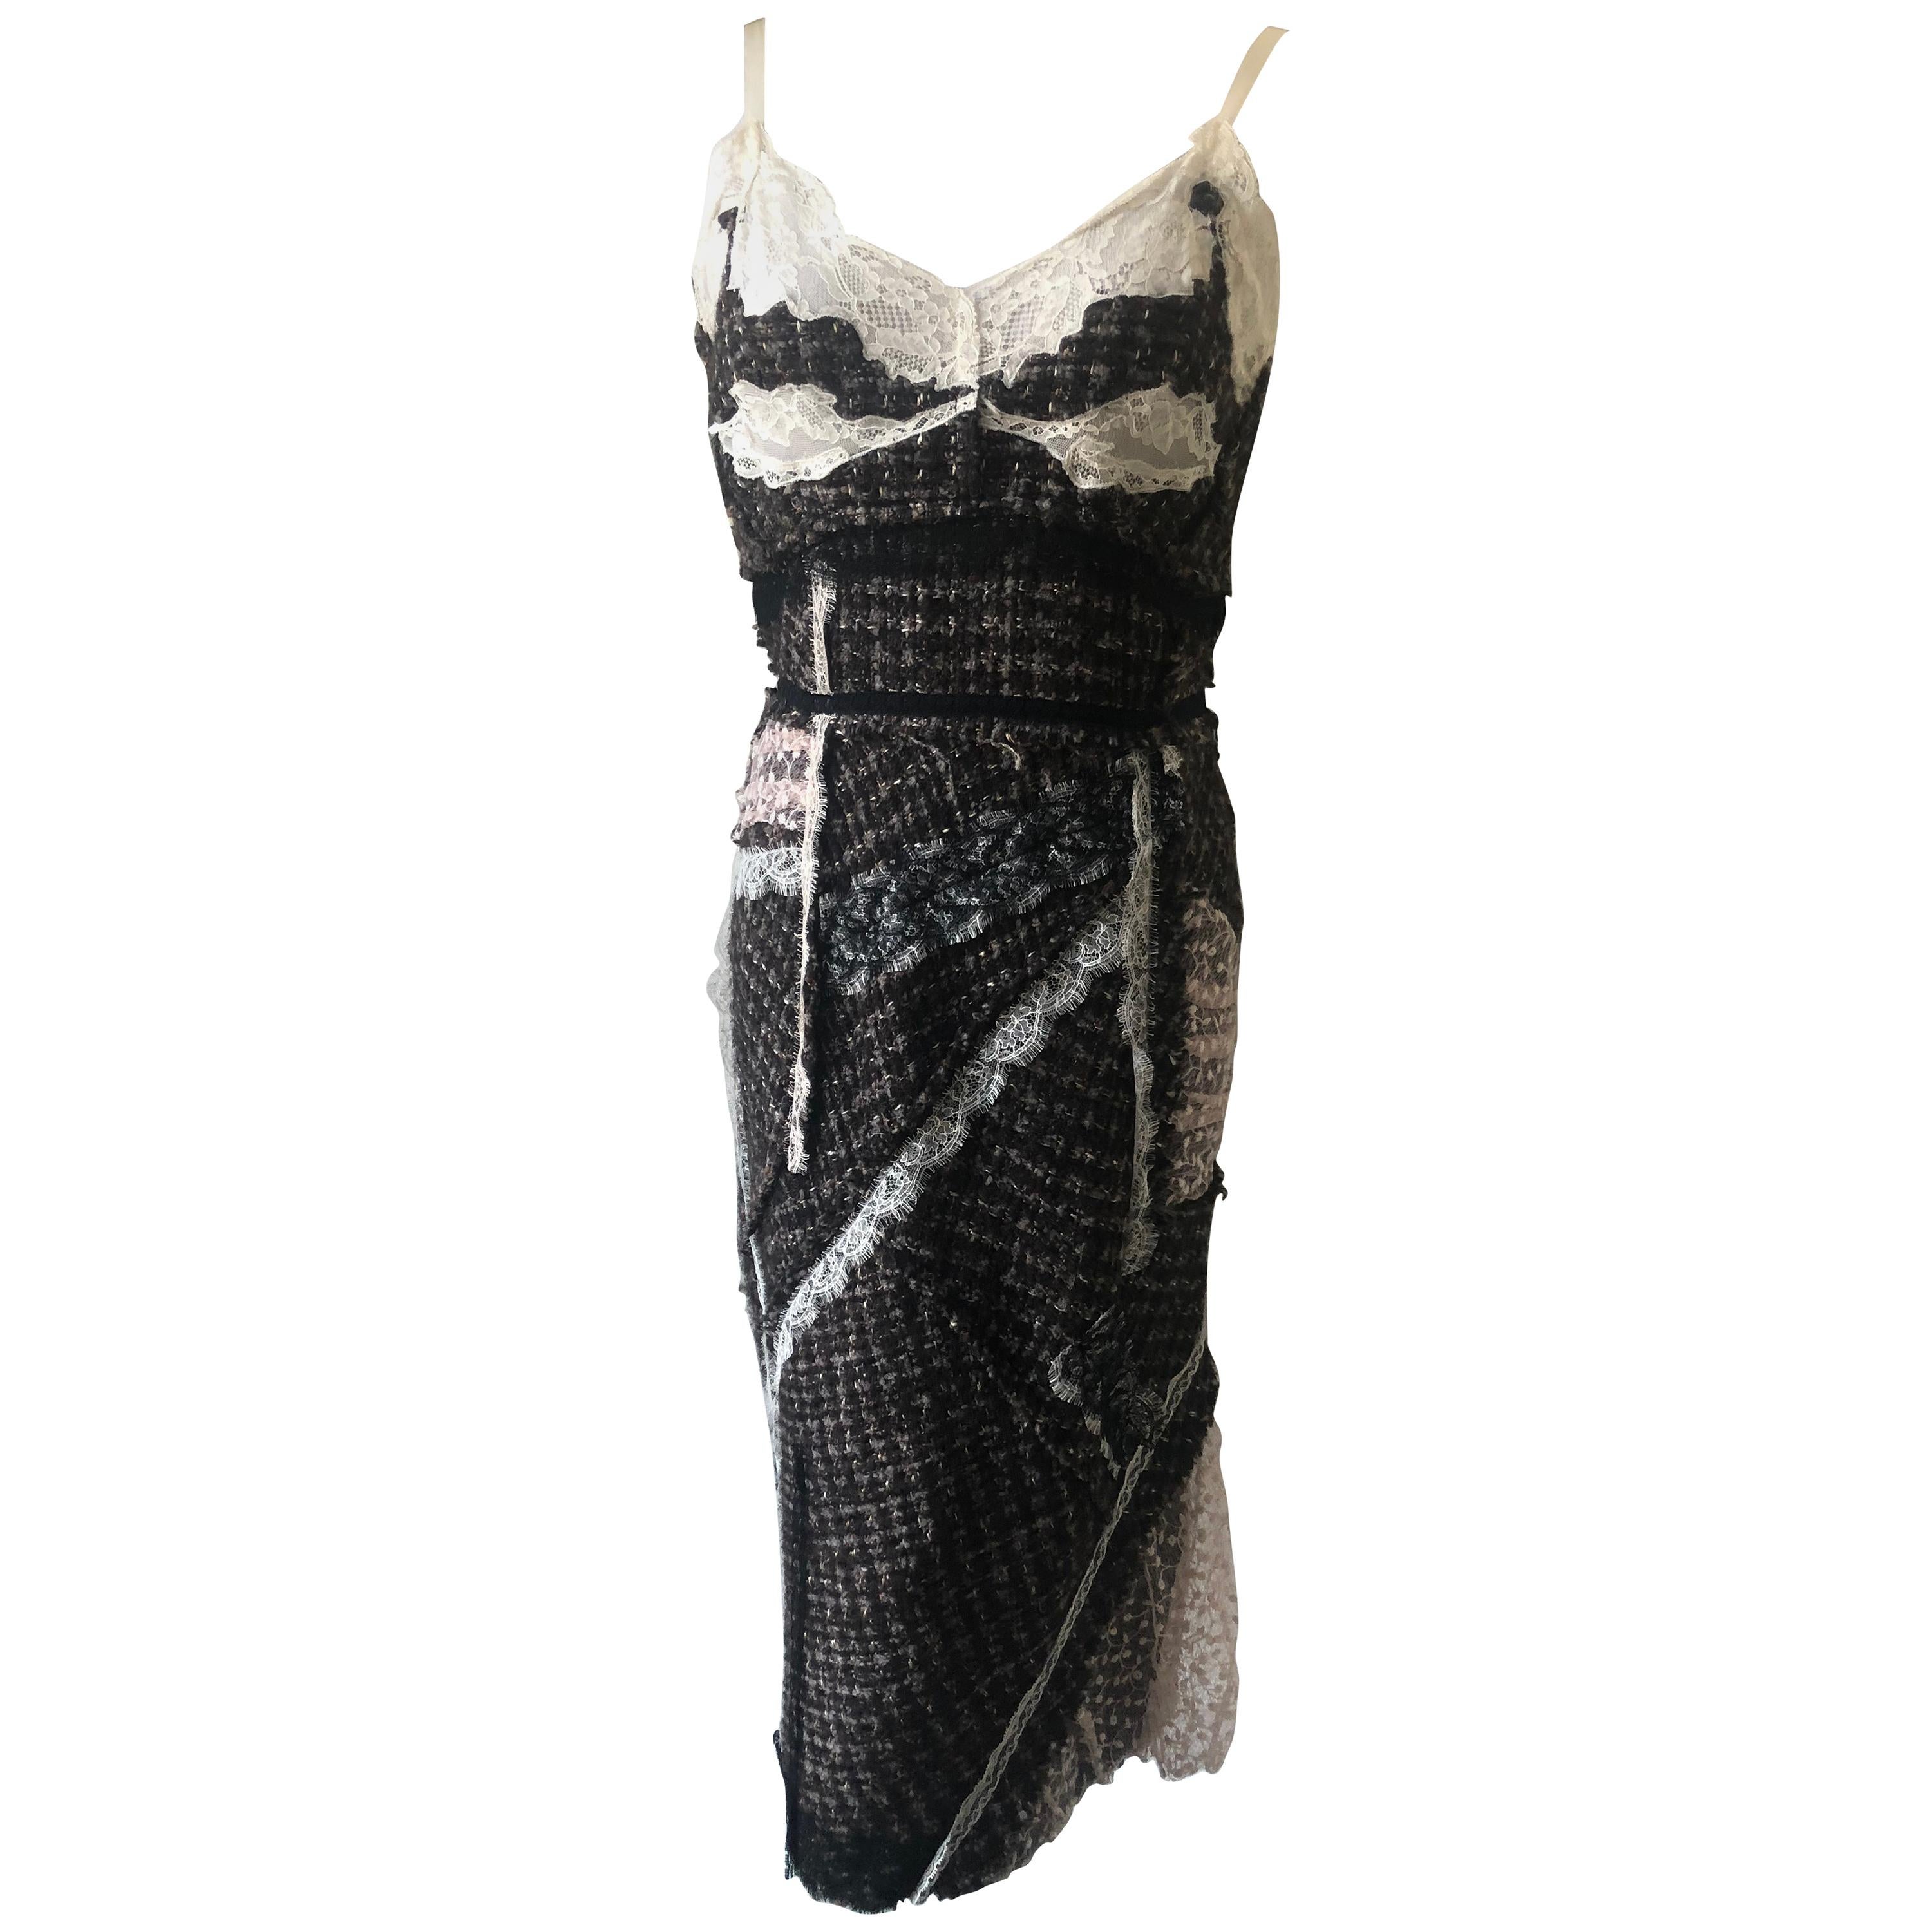 Nina Ricci inspired Lingerie Dress Size 40 Fr,